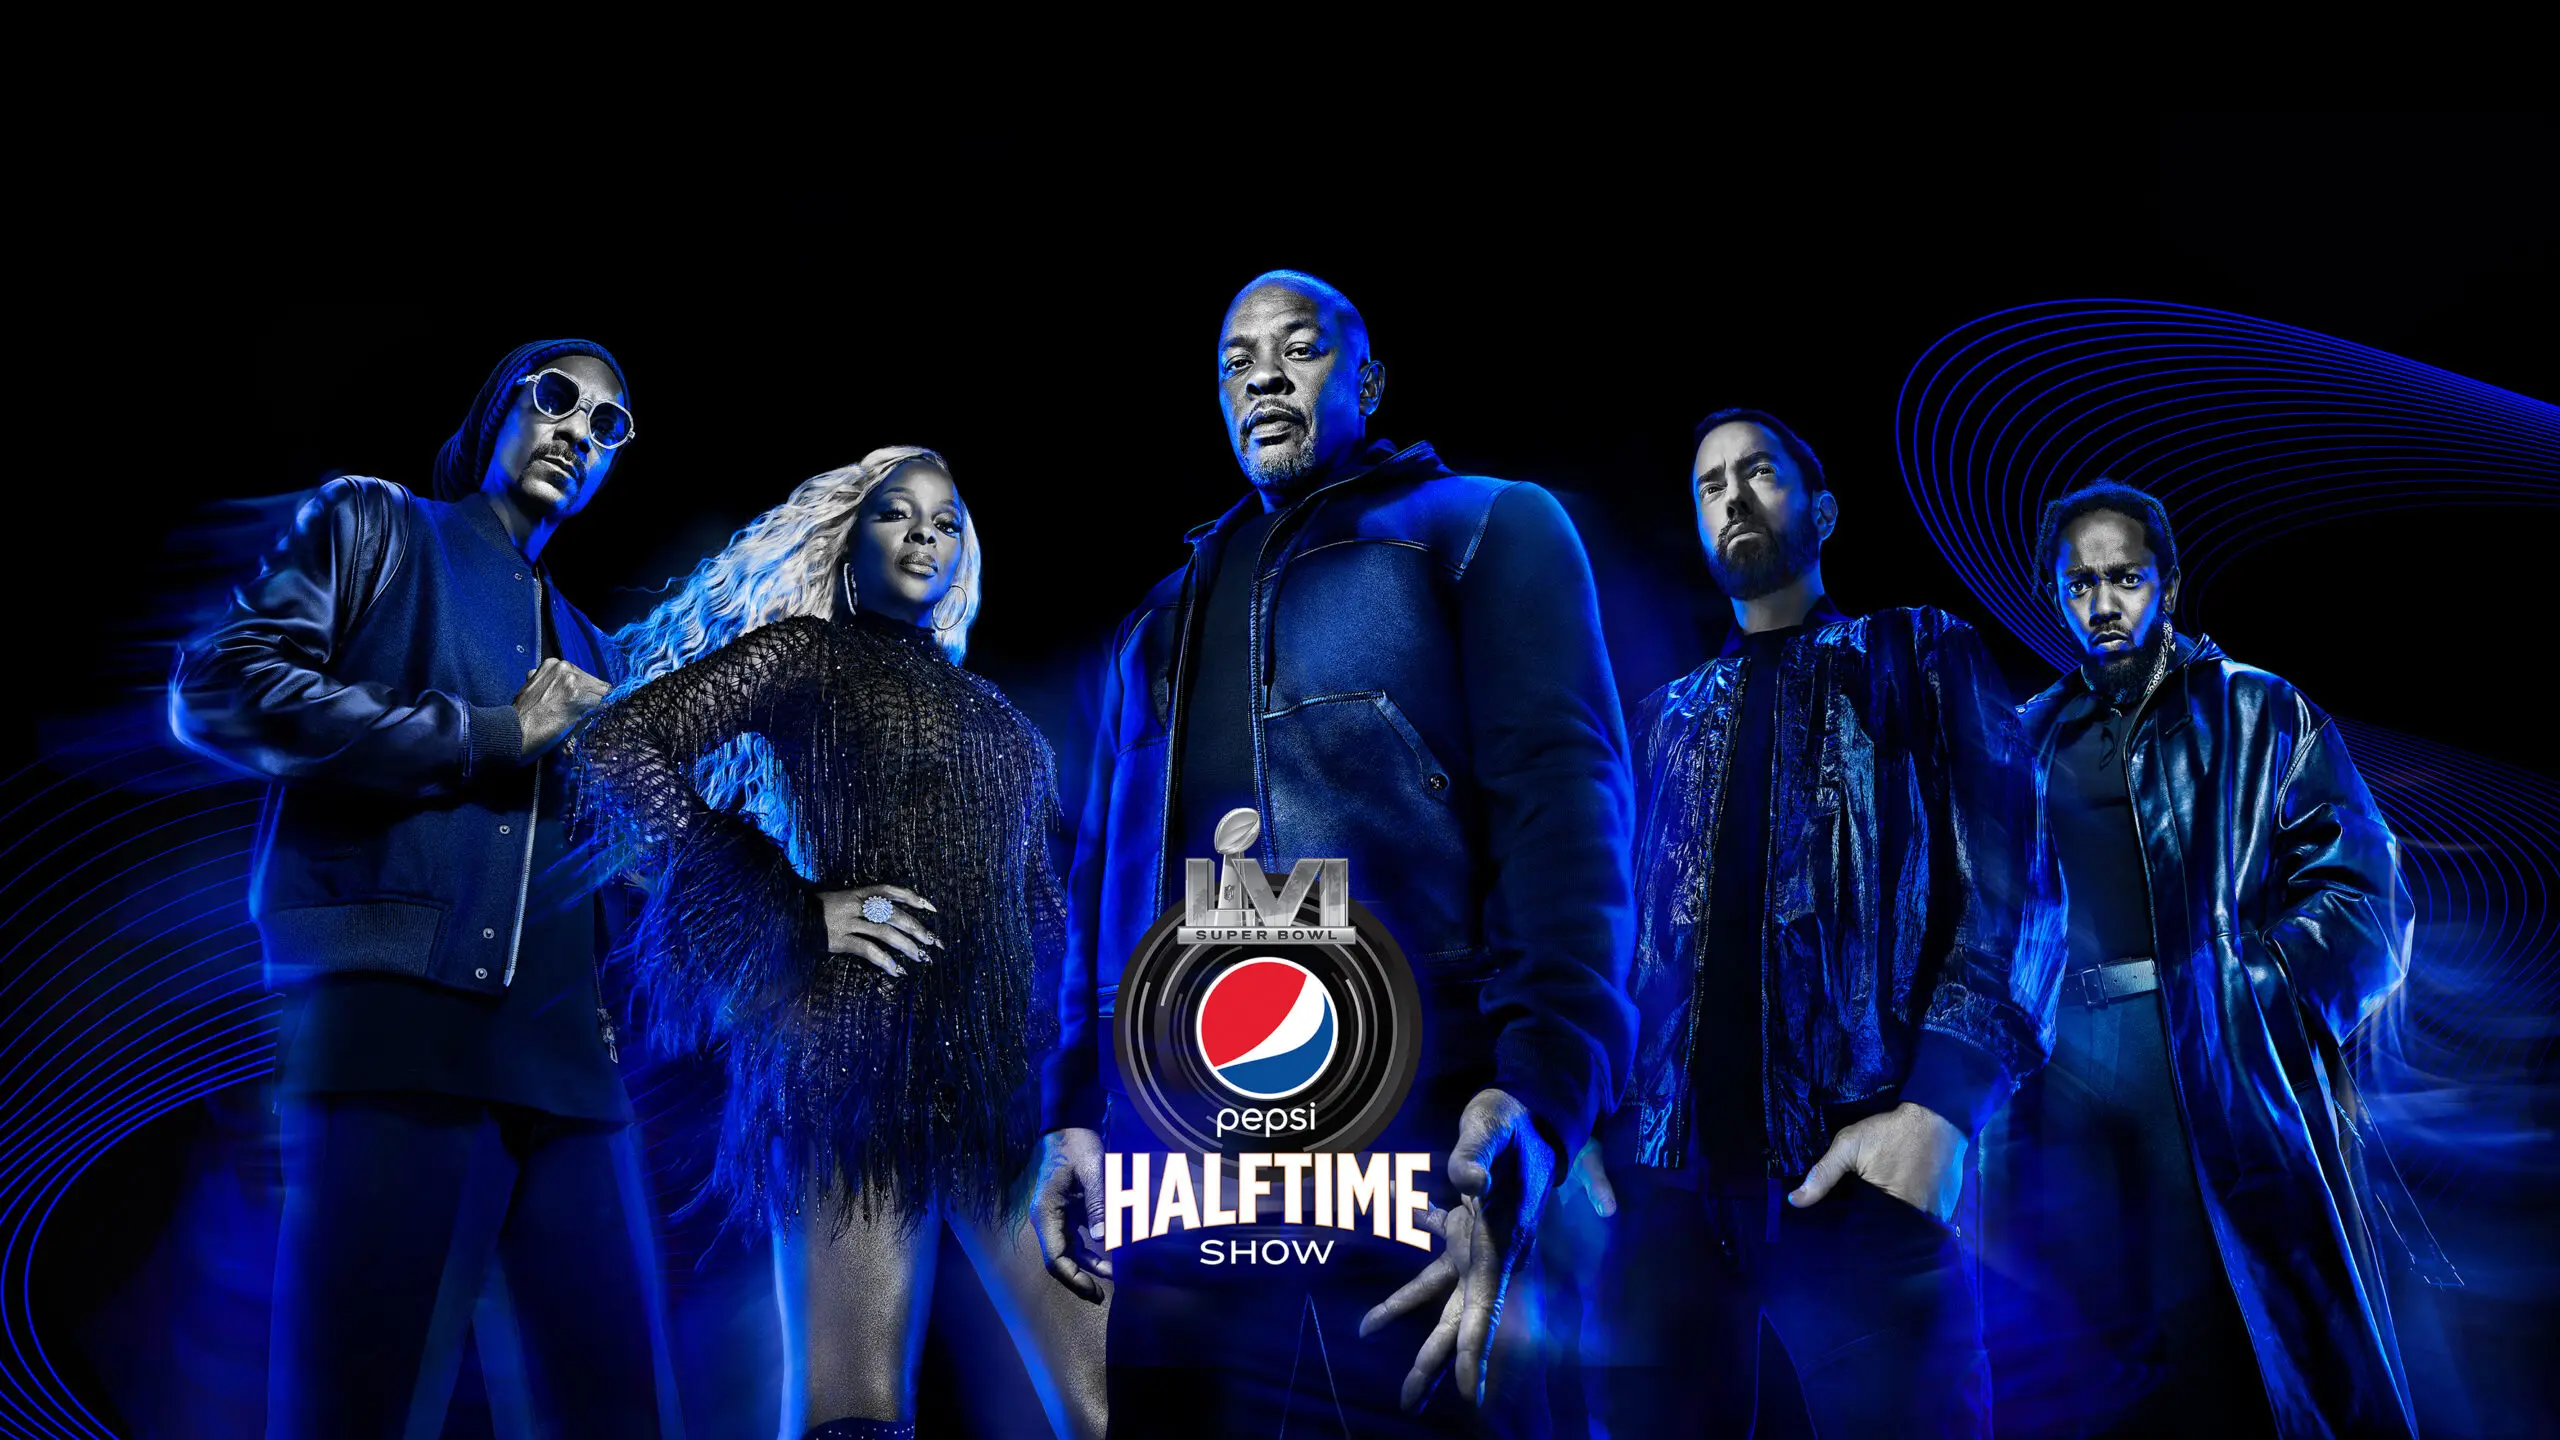 Ícones de três gerações distintas do hip-hop e do rap americano se reúnem no show do intervalo do Super Bowl